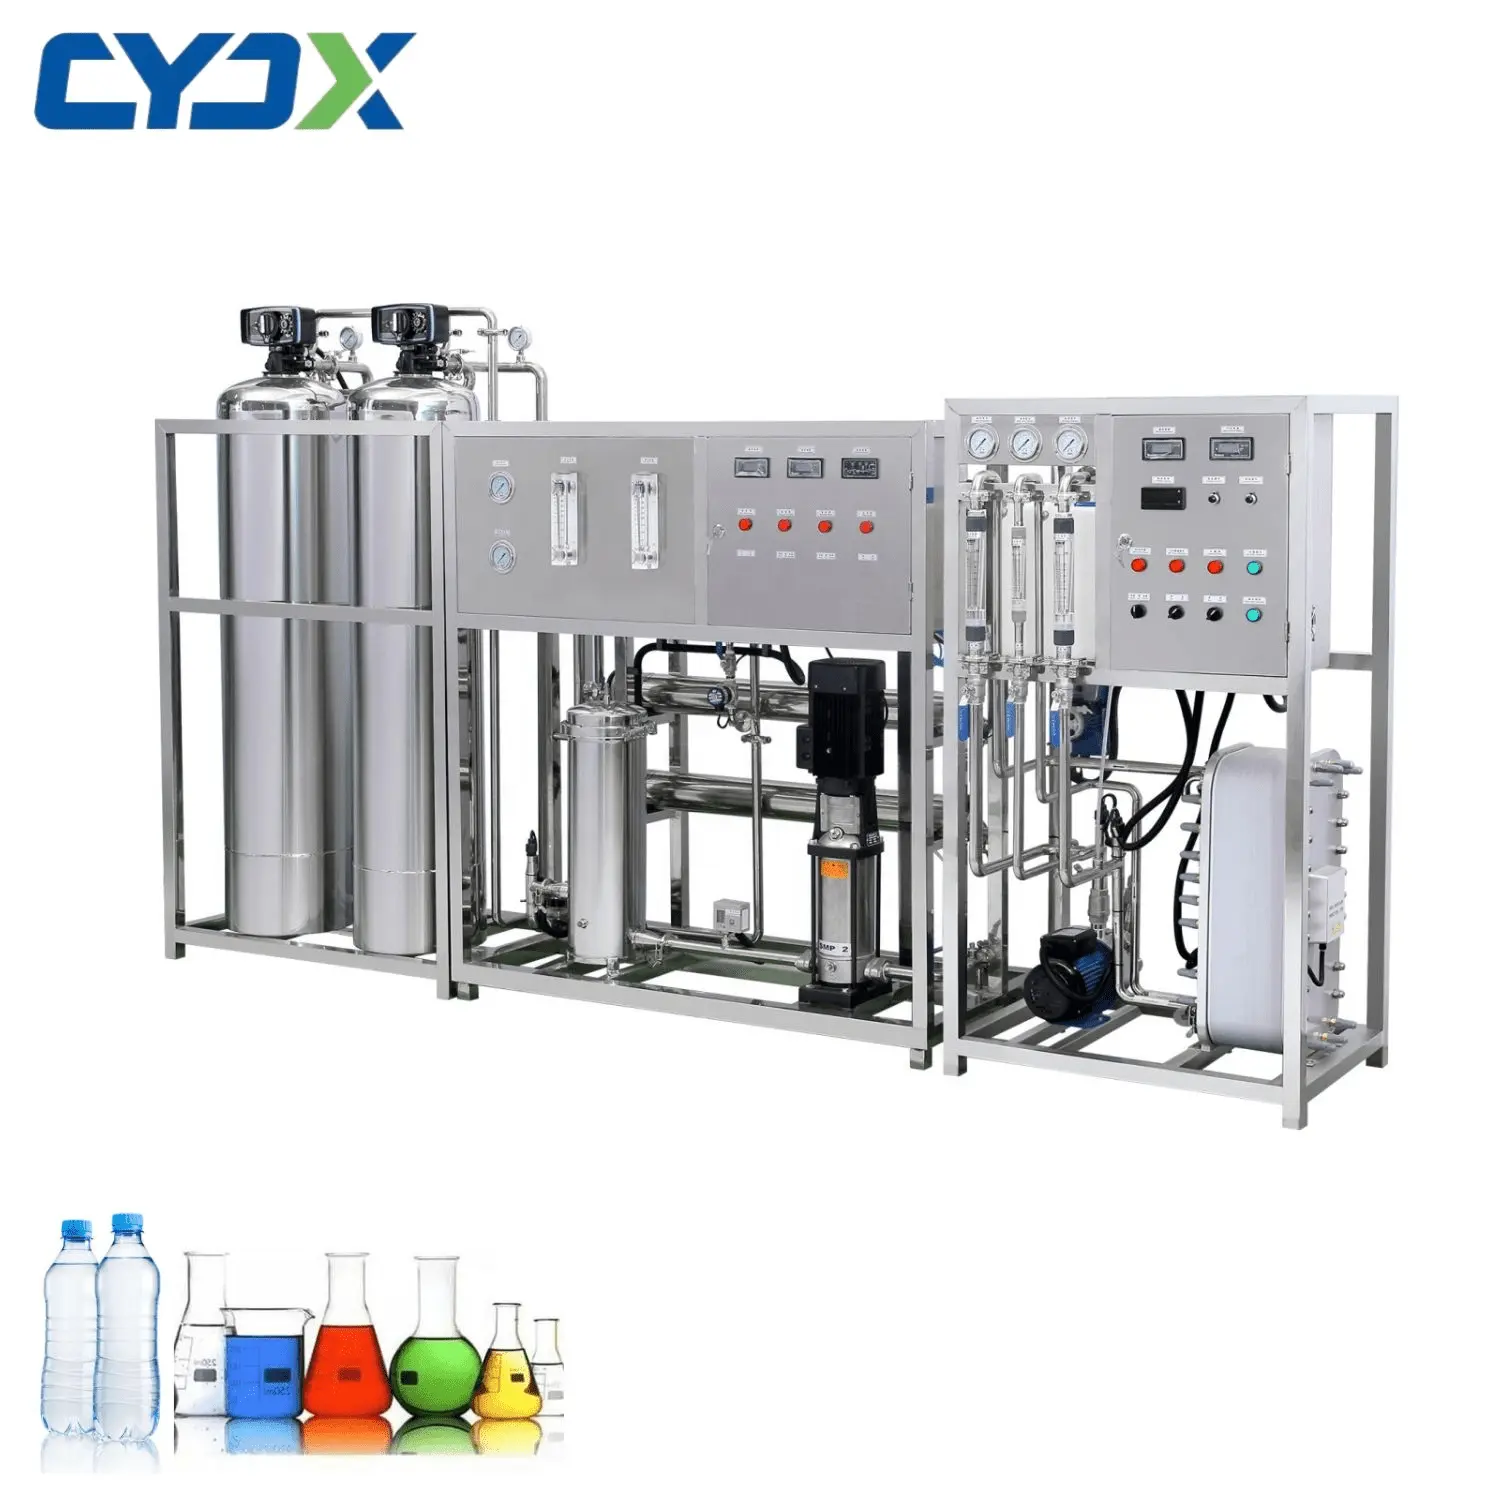 Machine de filtre à eau d'équipement de purification de lampe germicide à haute intensité de CYJX Machine ultra pure